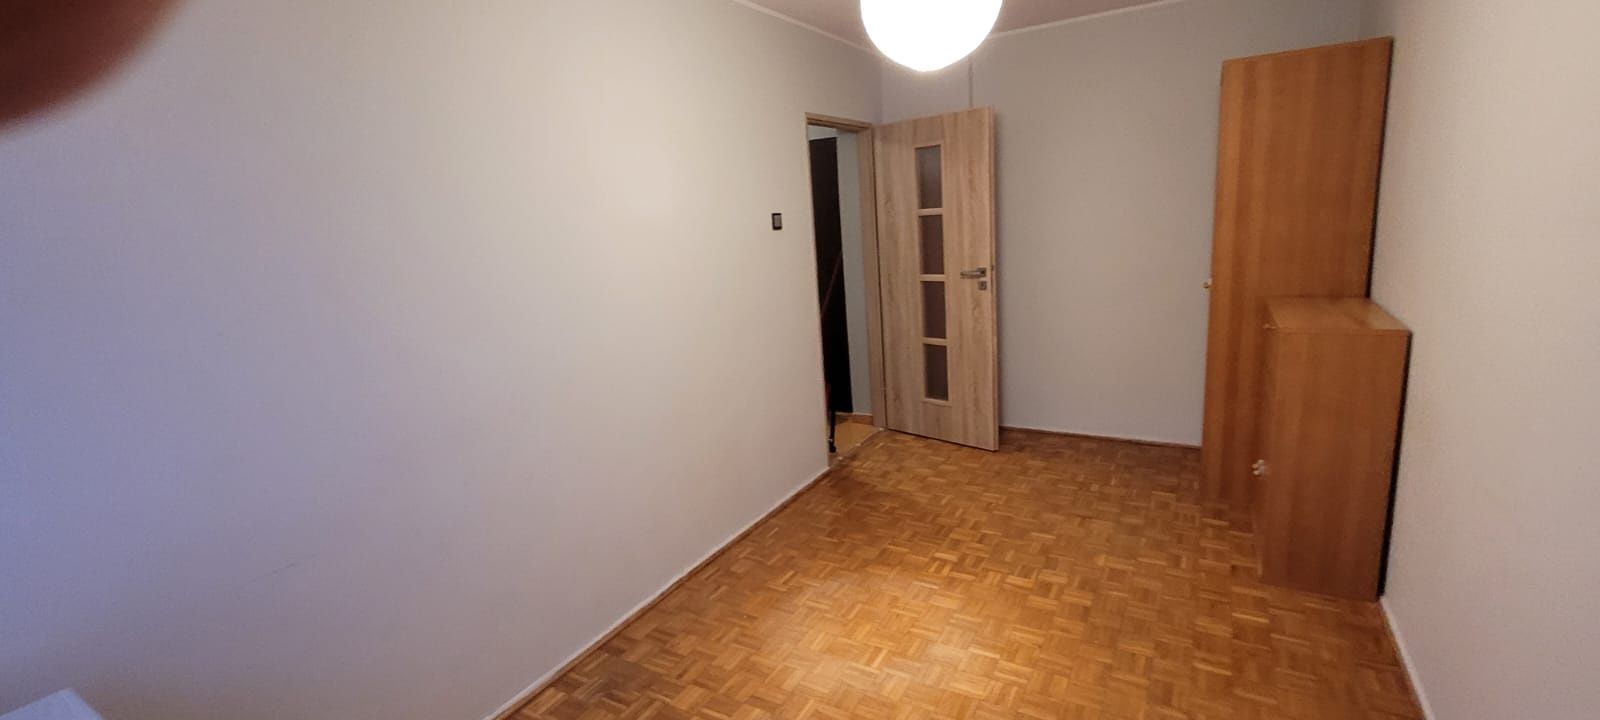 Wynajmę mieszkanie 2 pokojowe Wrocław ul. Kamienna